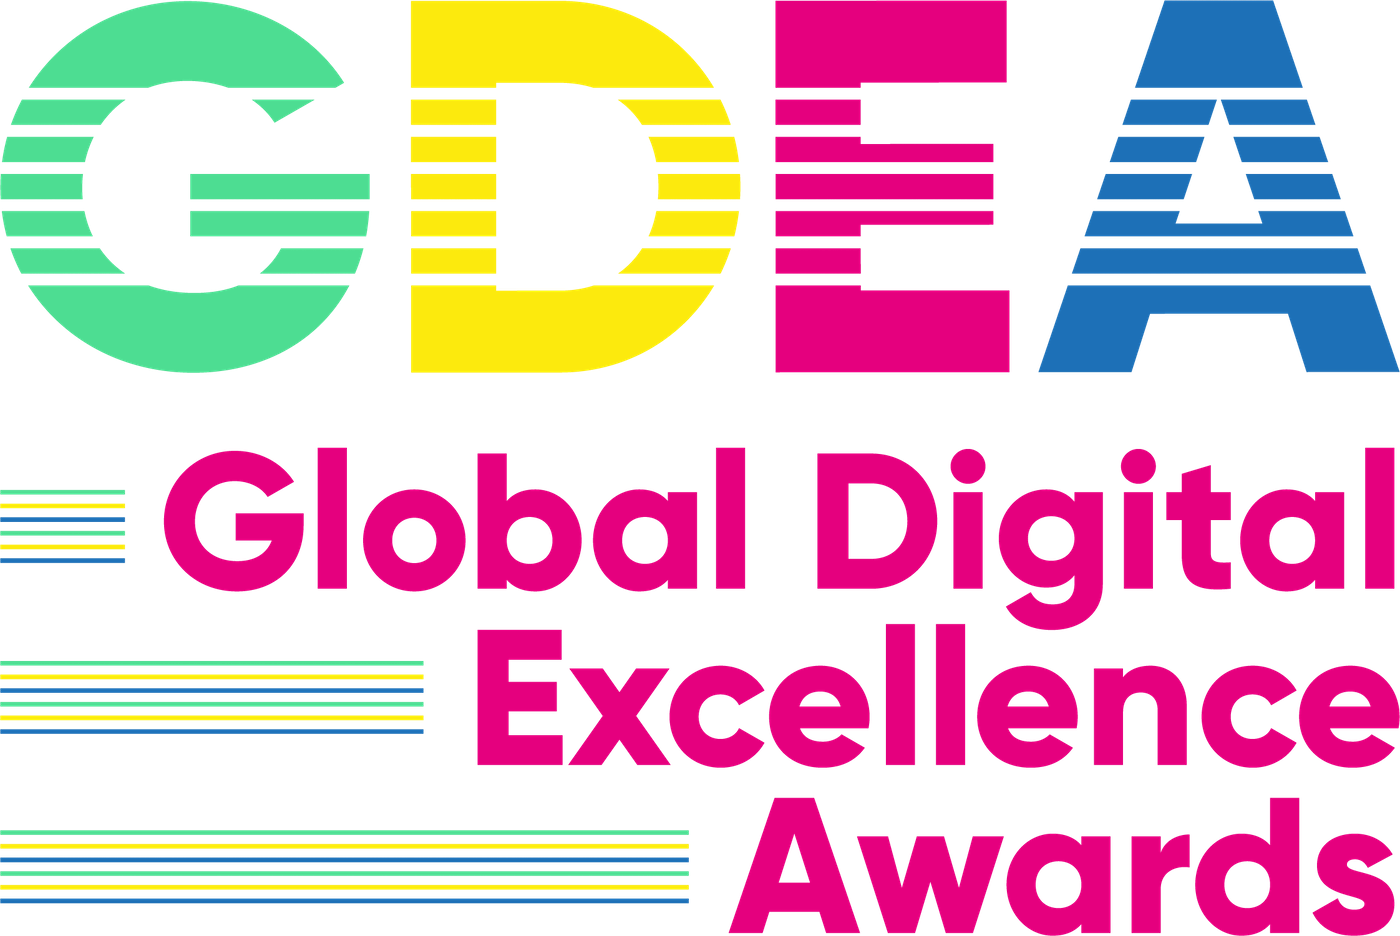 Global Digital Excellence Awards logo